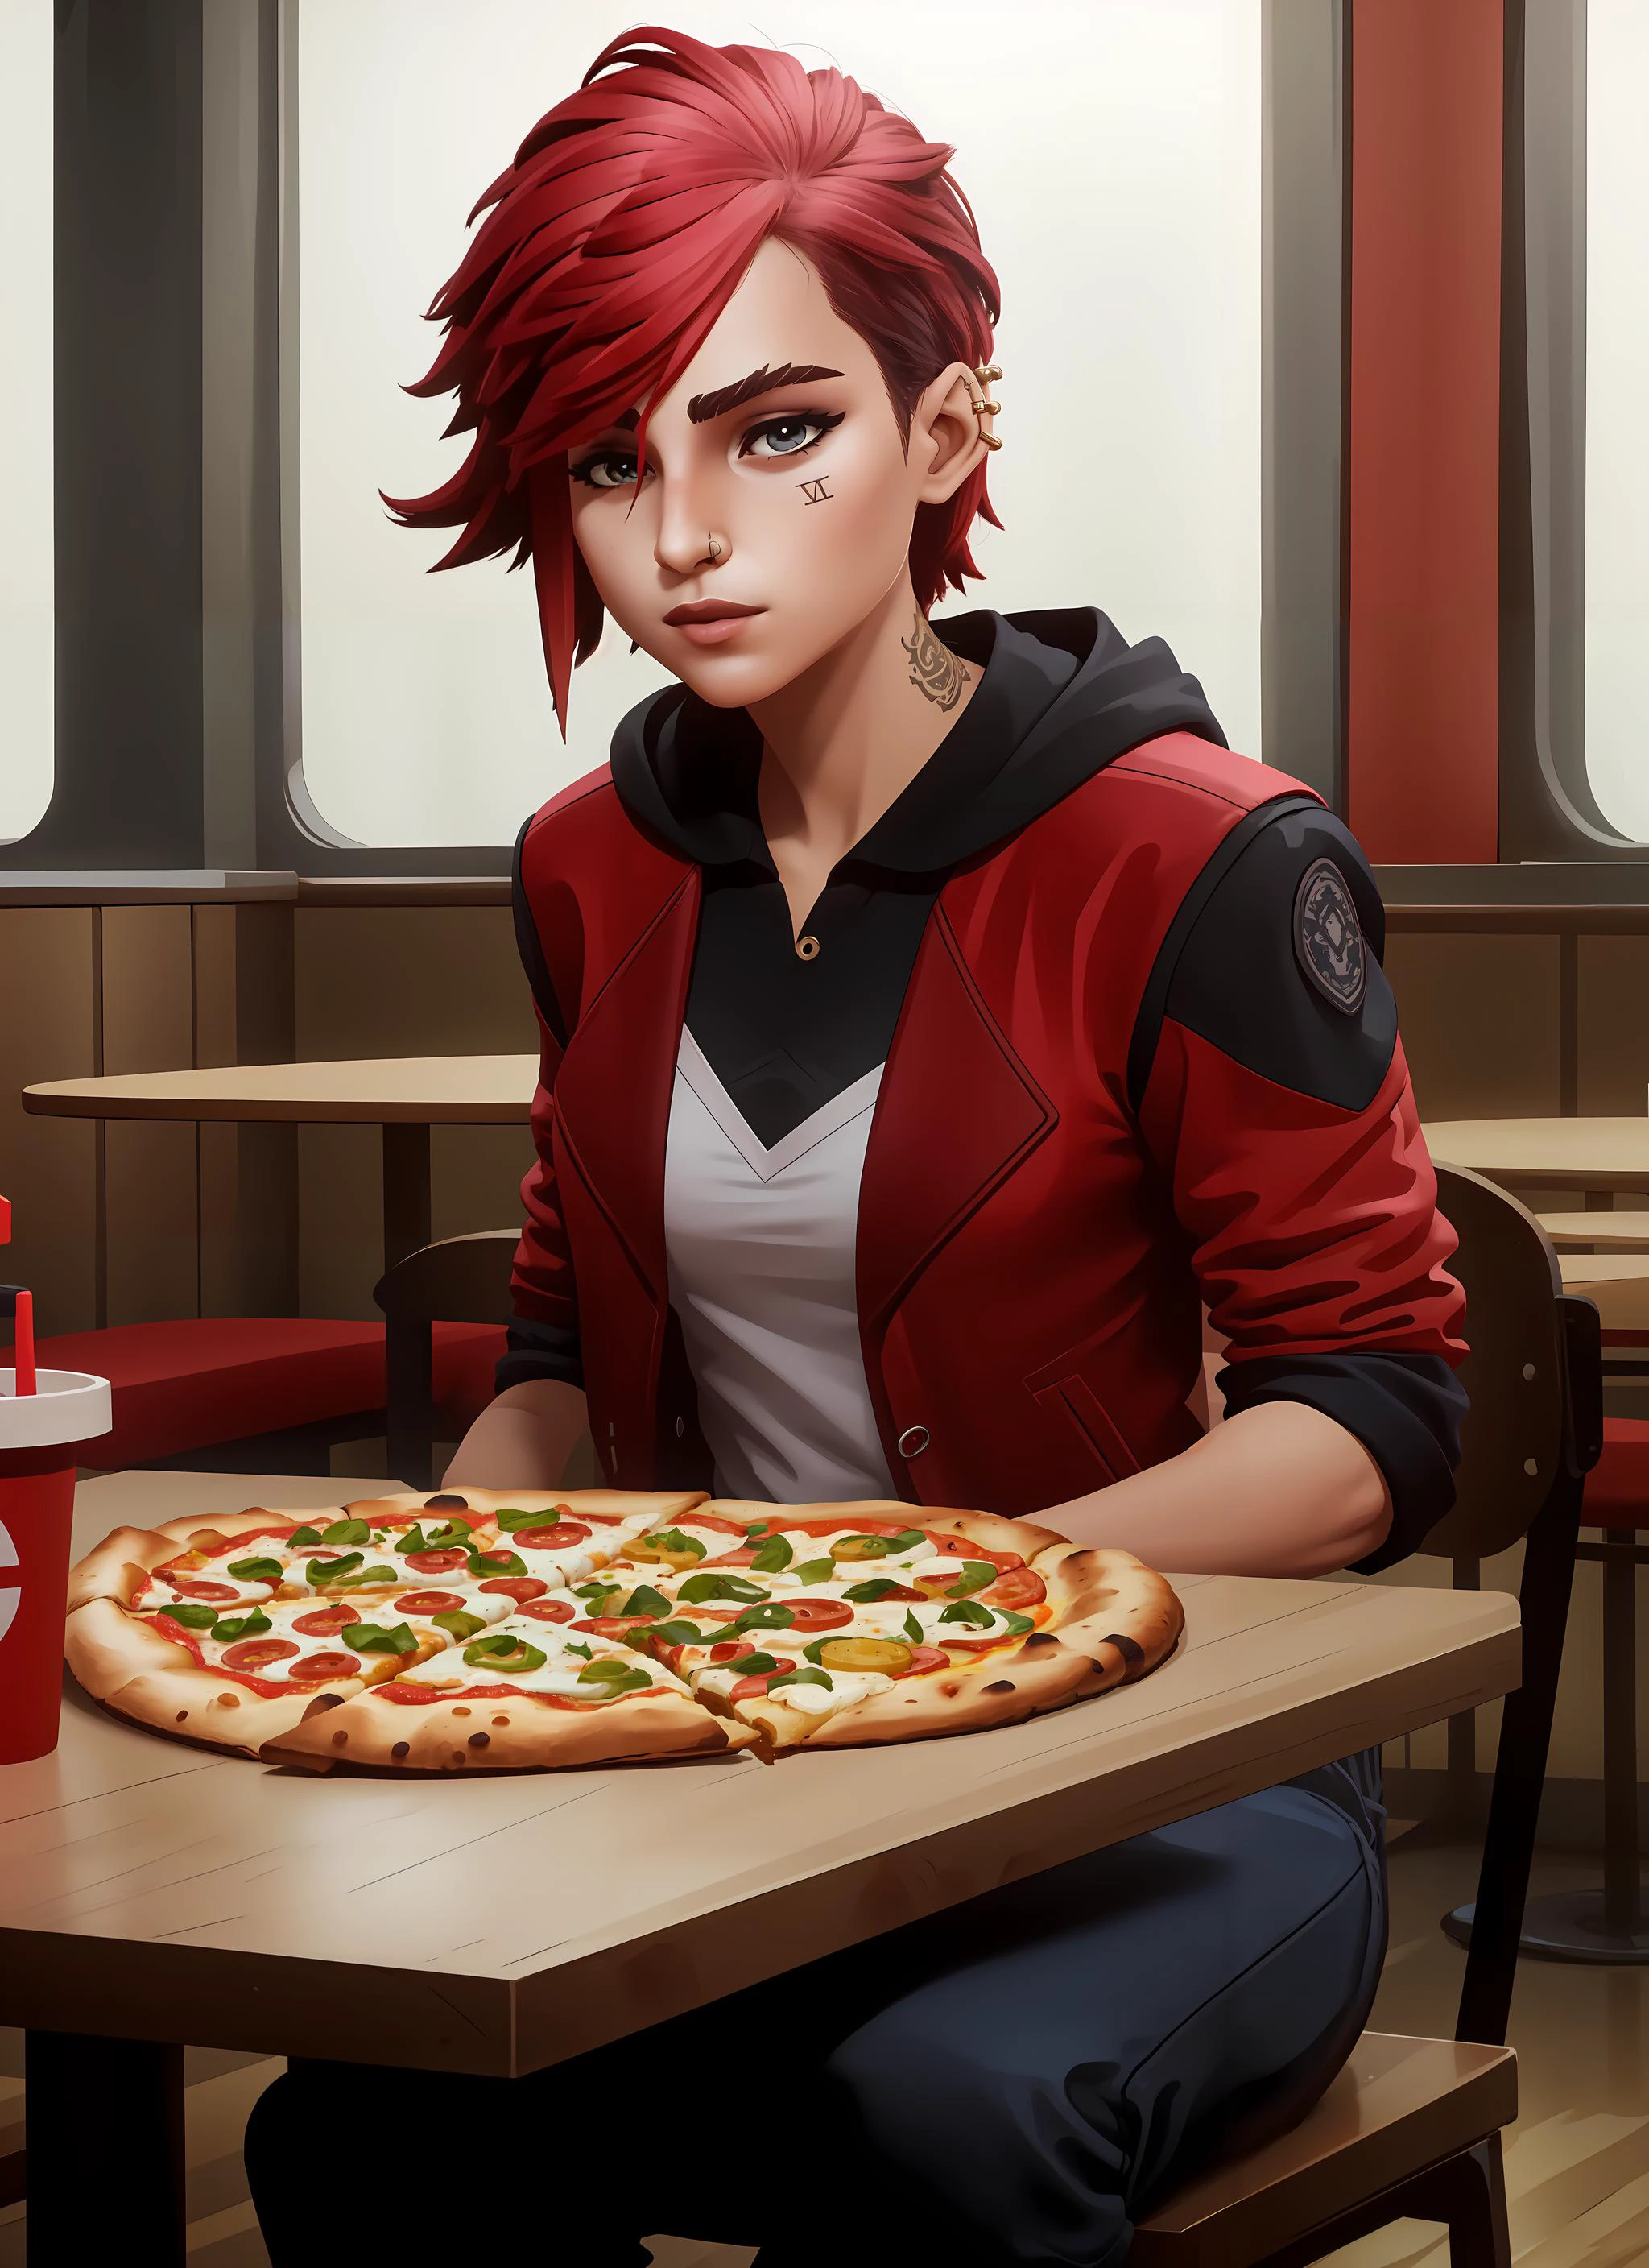 (杰作, 最好的质量),  复杂的细节, 
1女孩,      
快餐店, 坐在桌旁, 吃披萨, 
 v1l0l, 1女孩, 红色夹克, 无袖连帽衫, 鼻子穿孔,